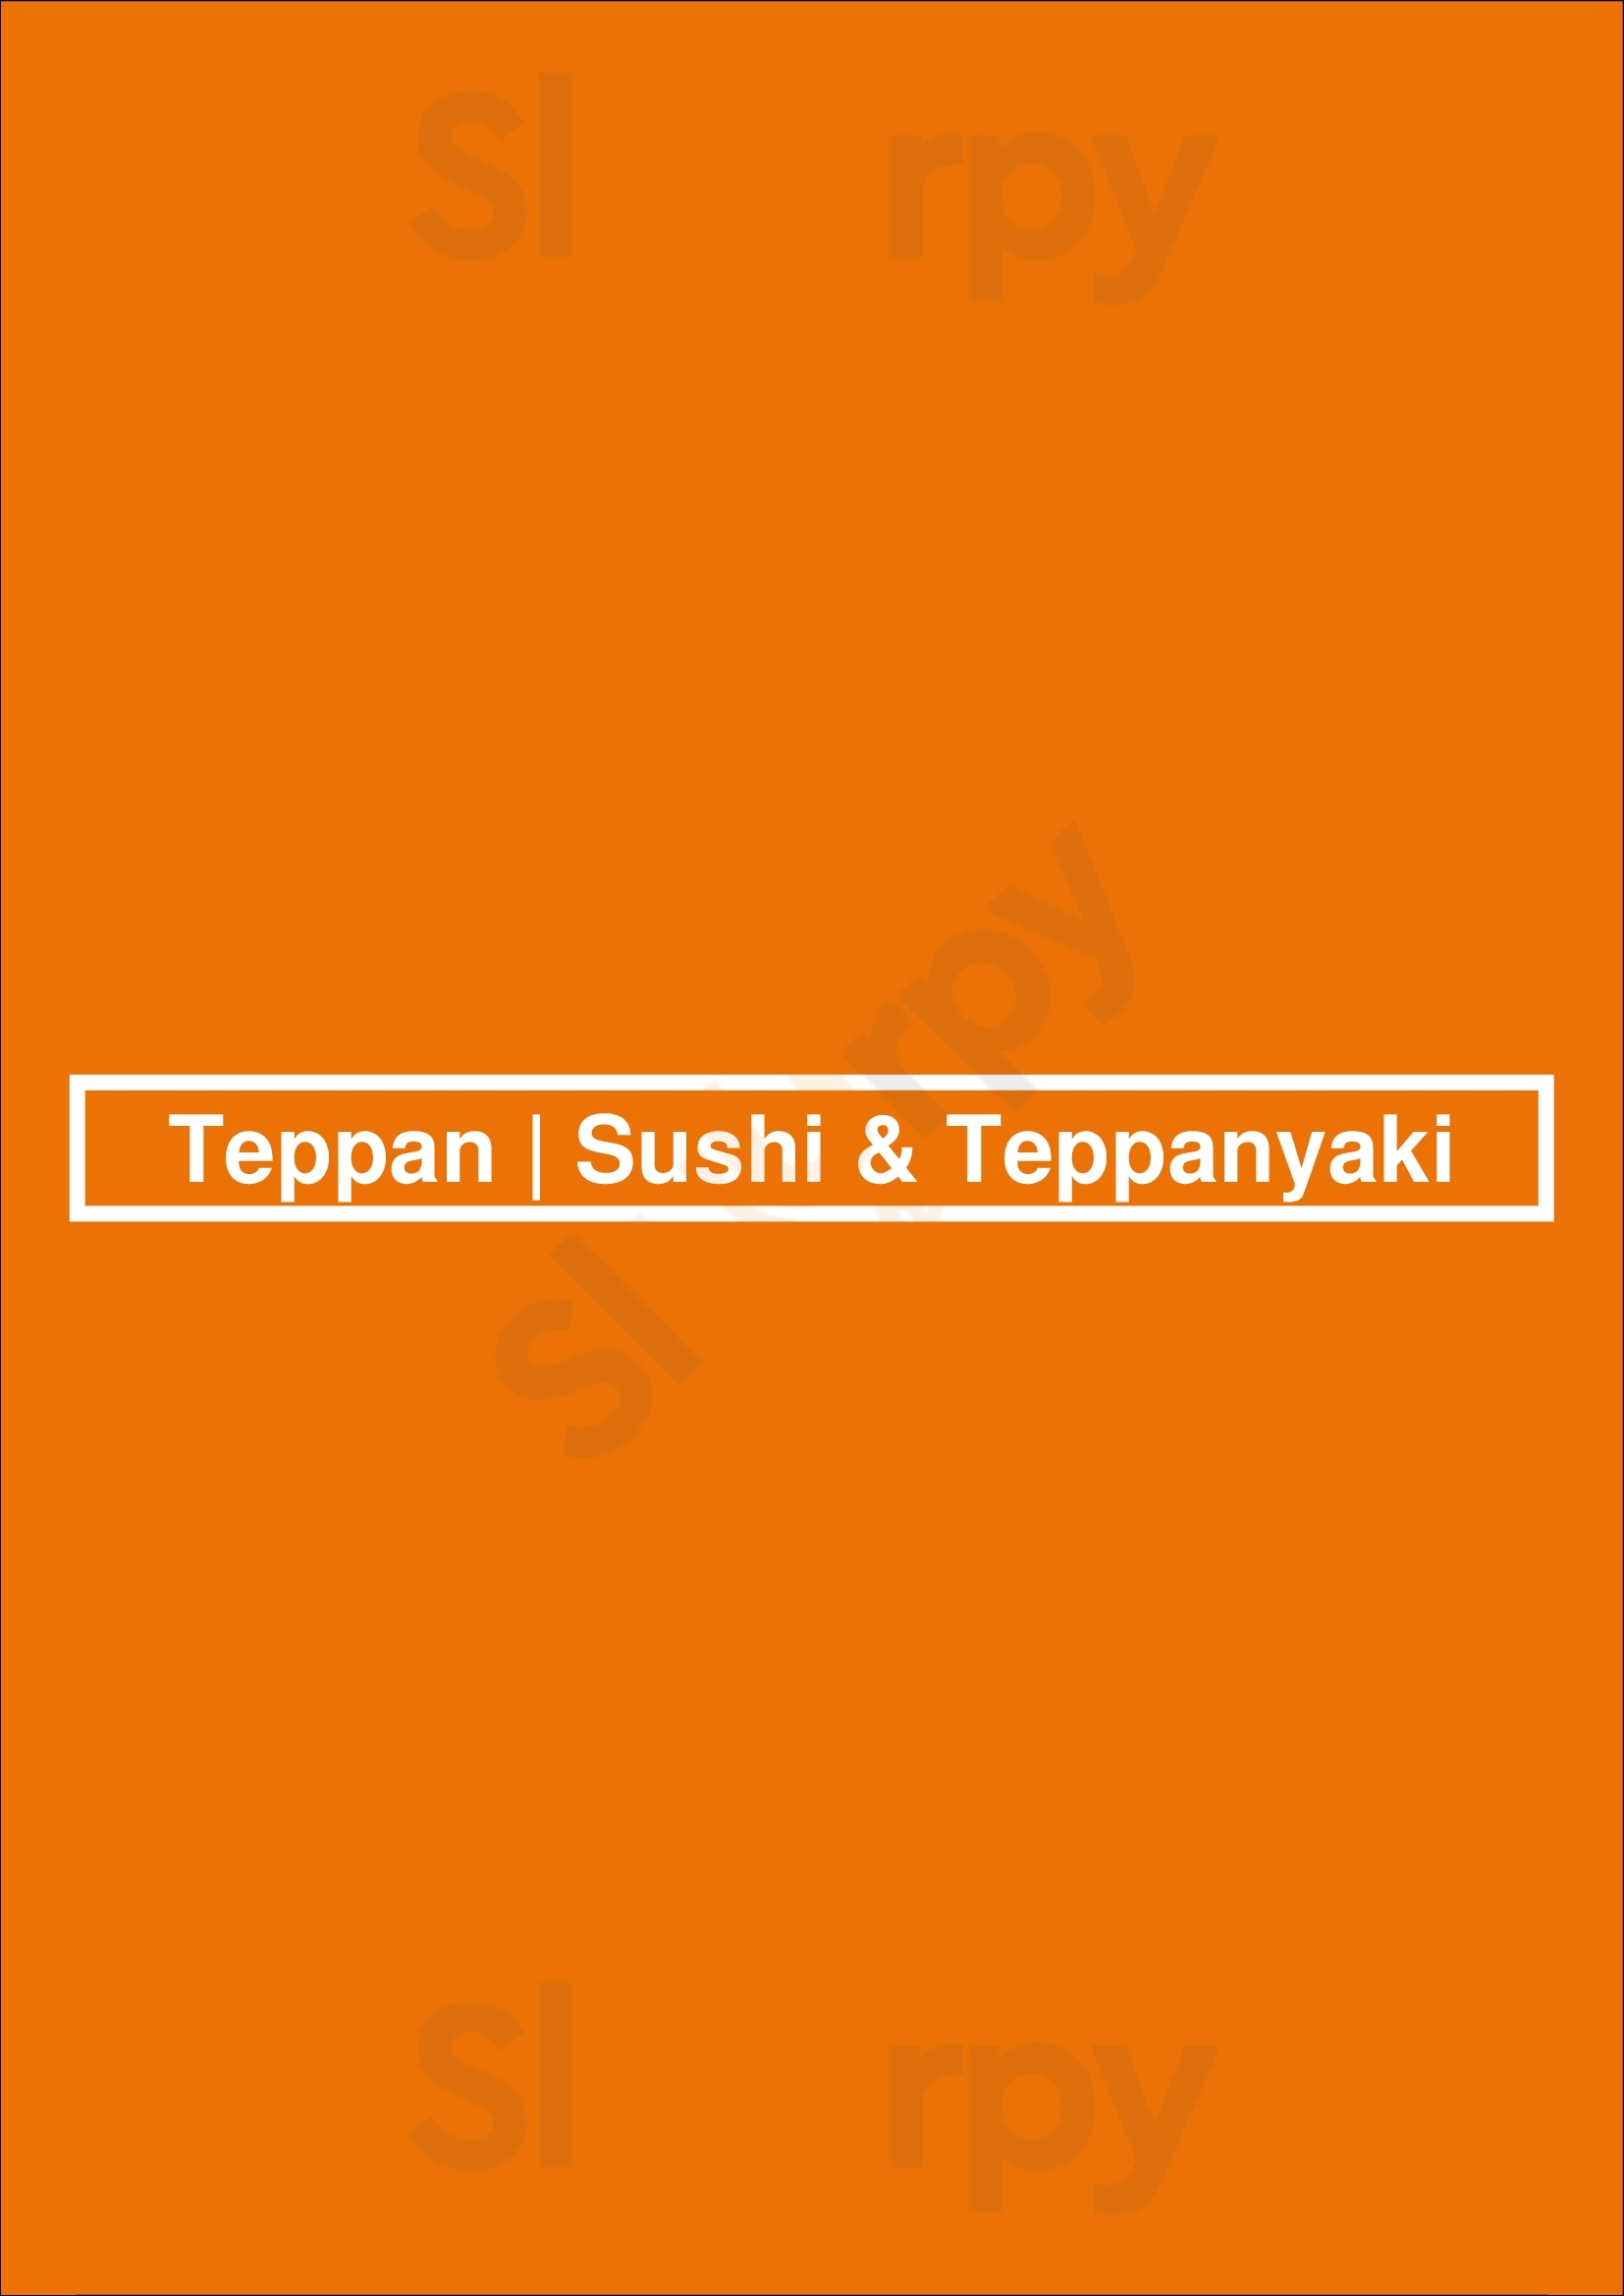 Teppan | Sushi & Teppanyaki Porto Menu - 1